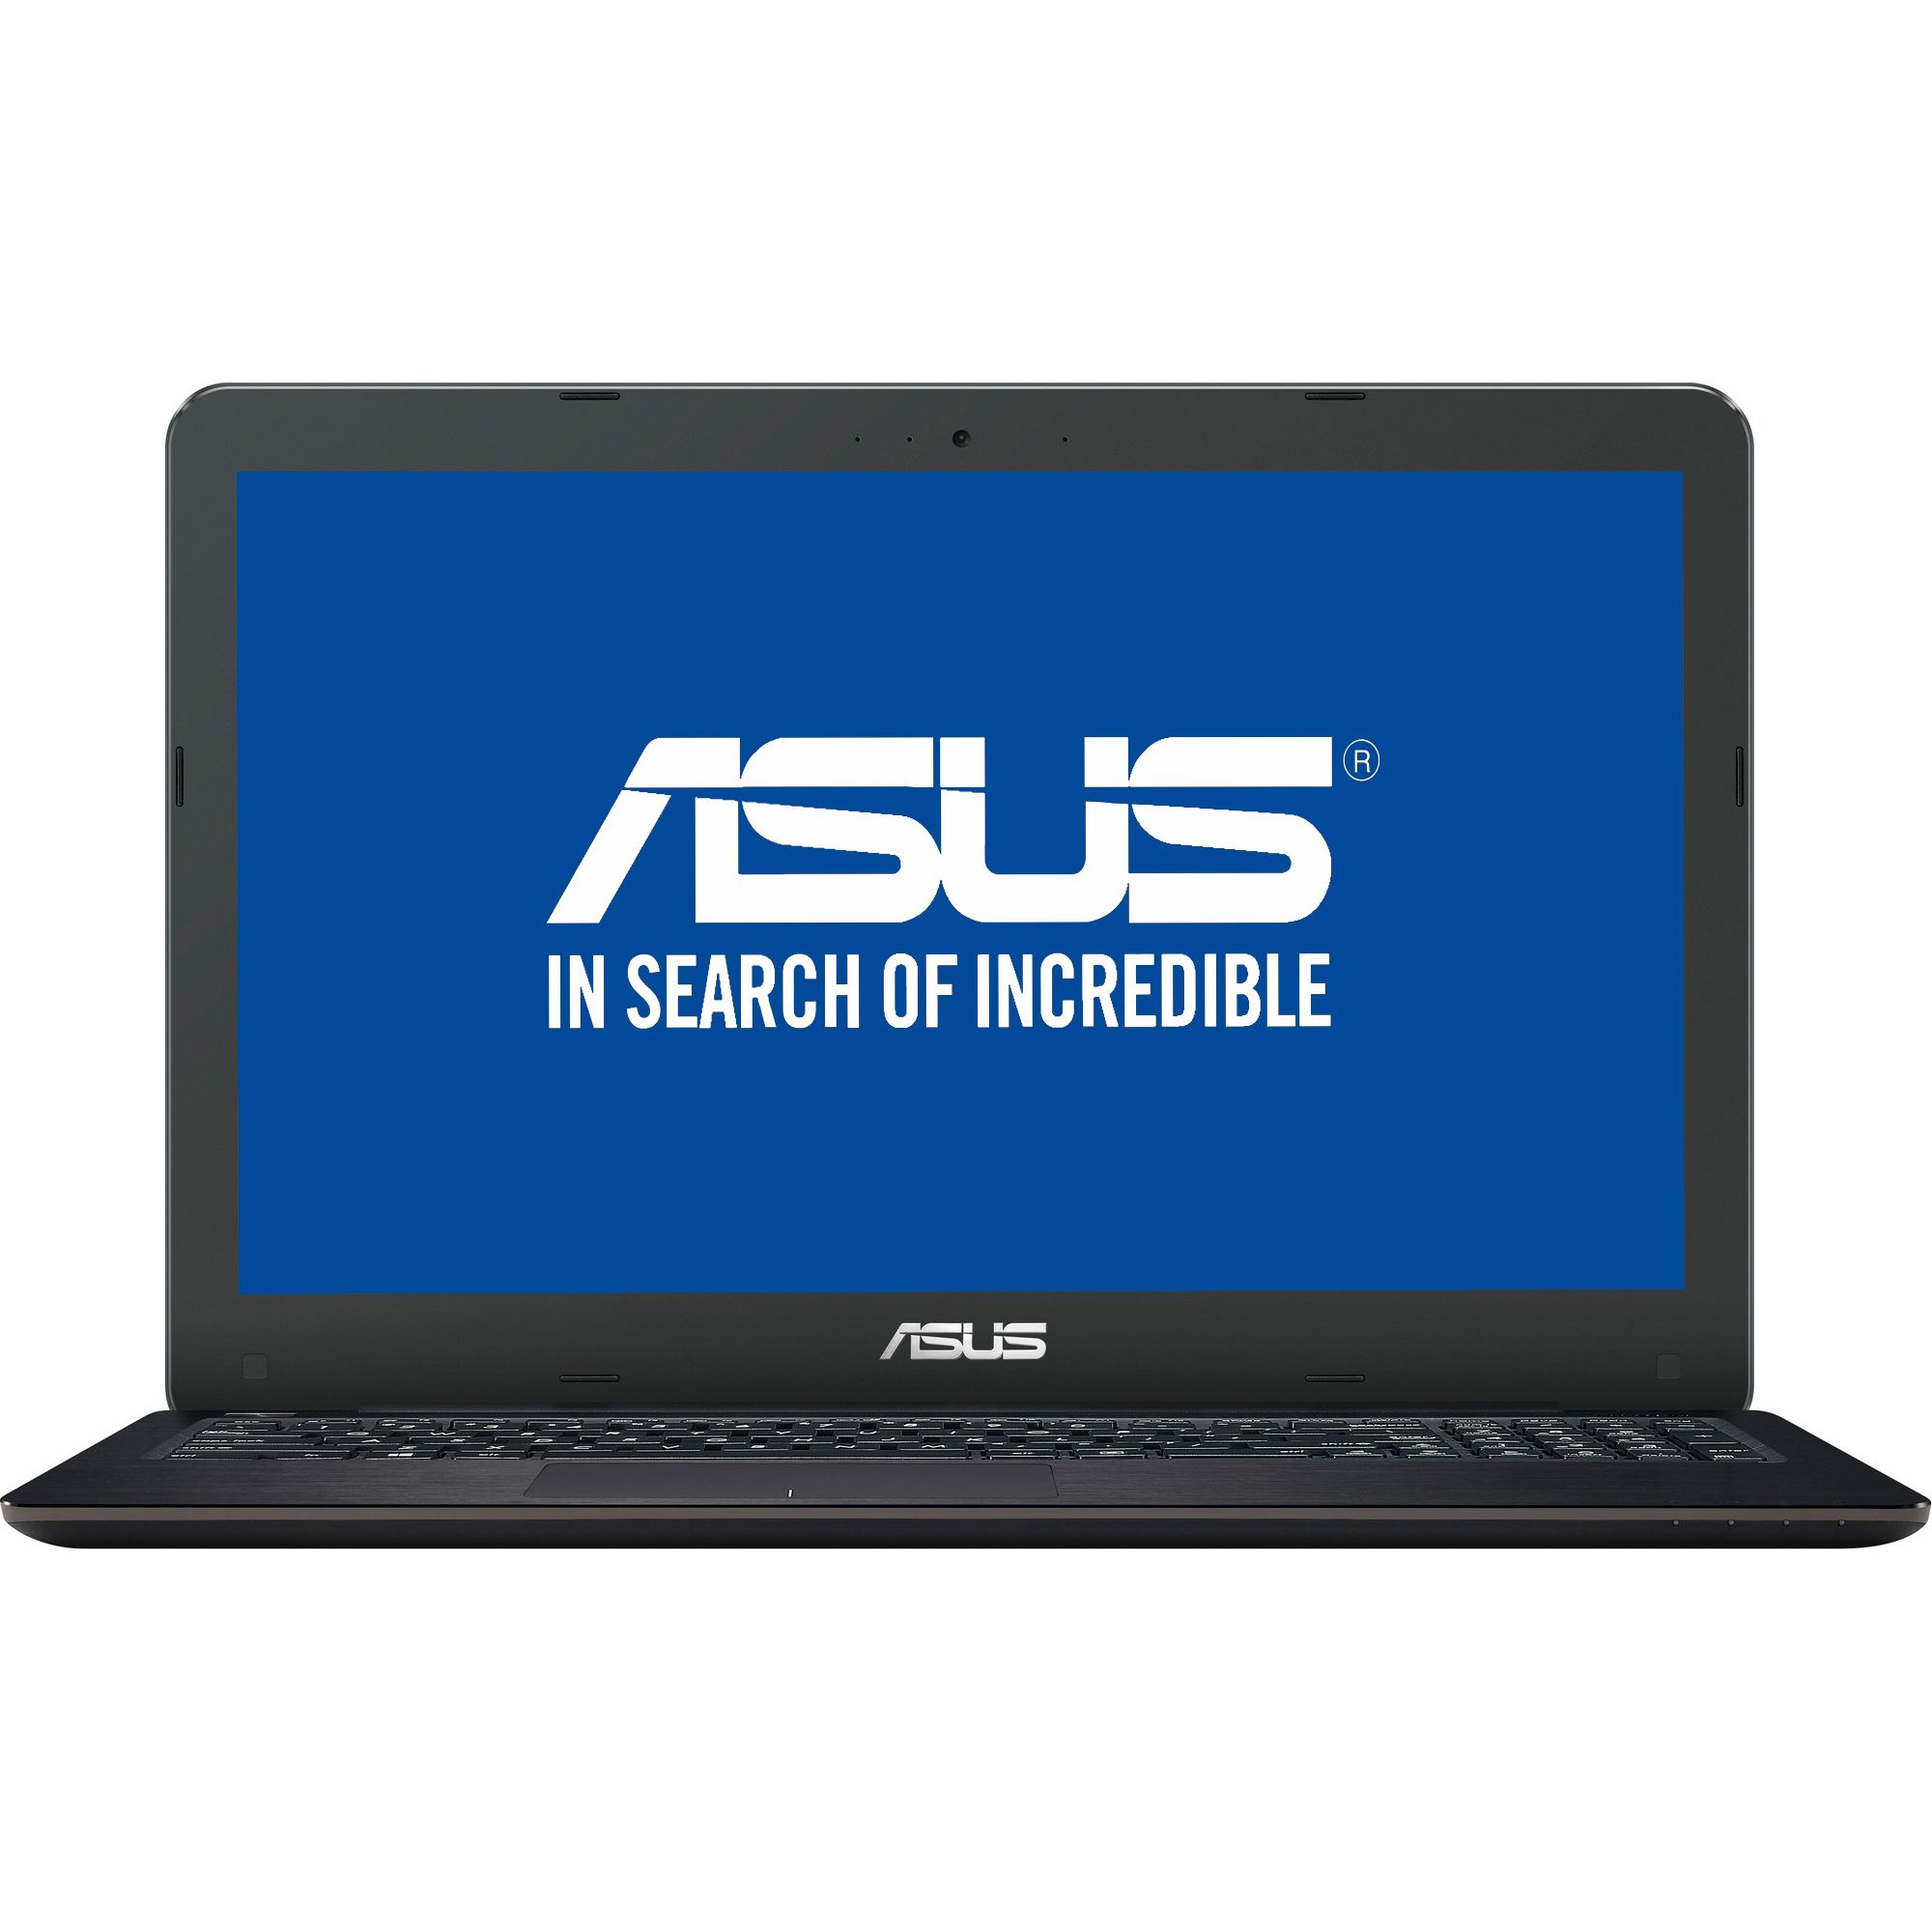  Laptop ASUS X556UJ-XX007D, Intel Core i5-6200U, 4GB DDR3, HDD 1TB, nVidia GeForce GT 920M 2GB, Free DOS 